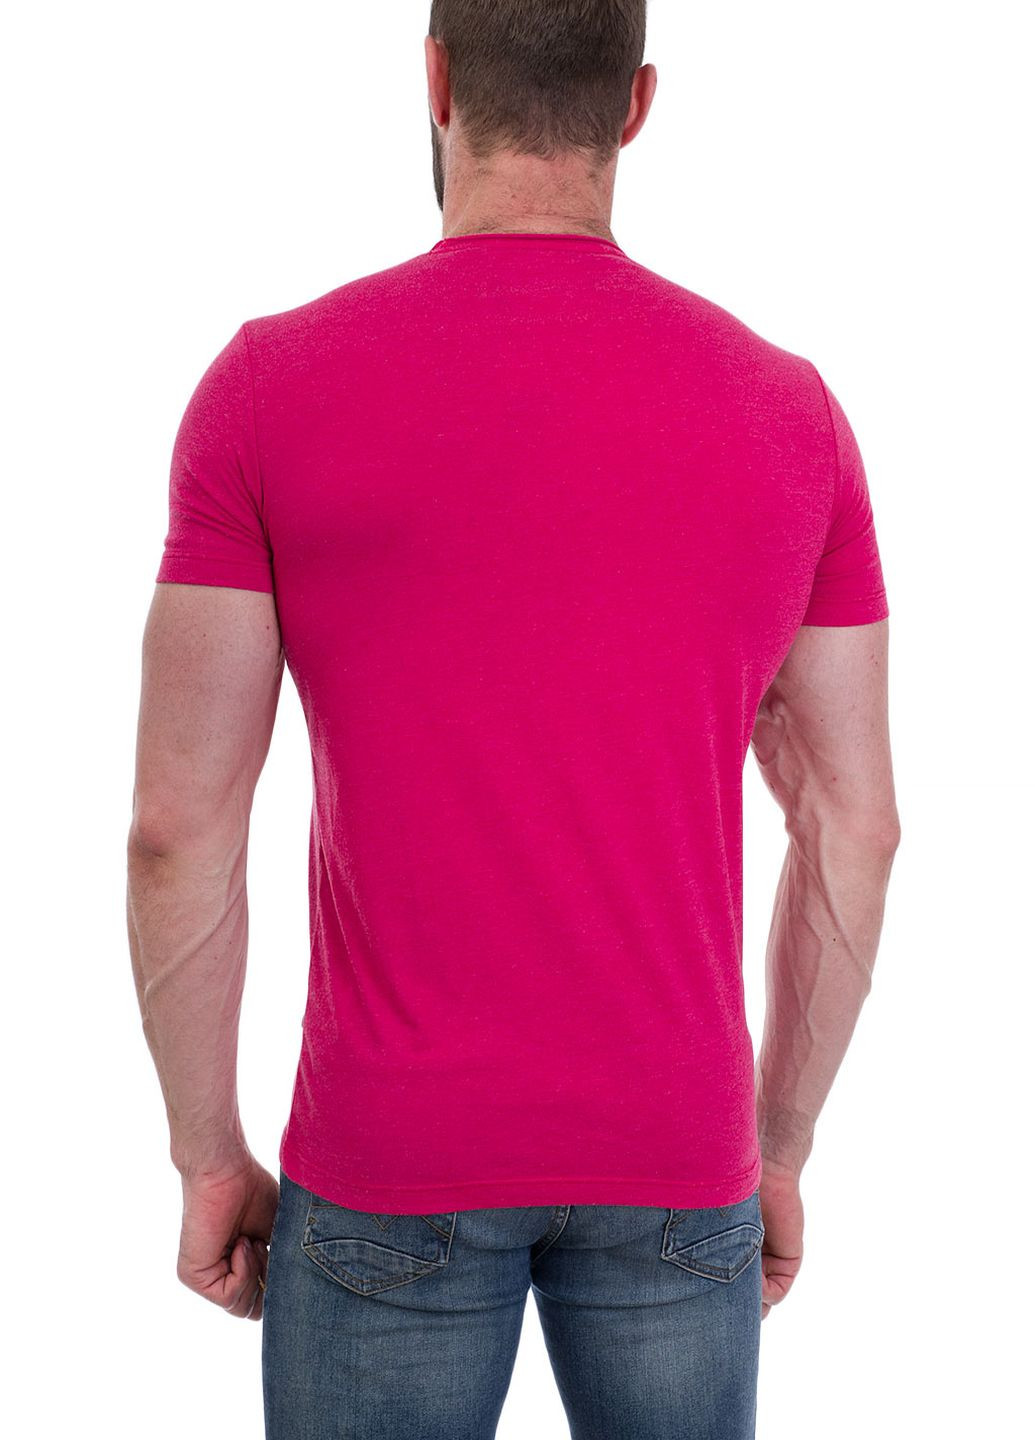 Розовая футболка Ragman